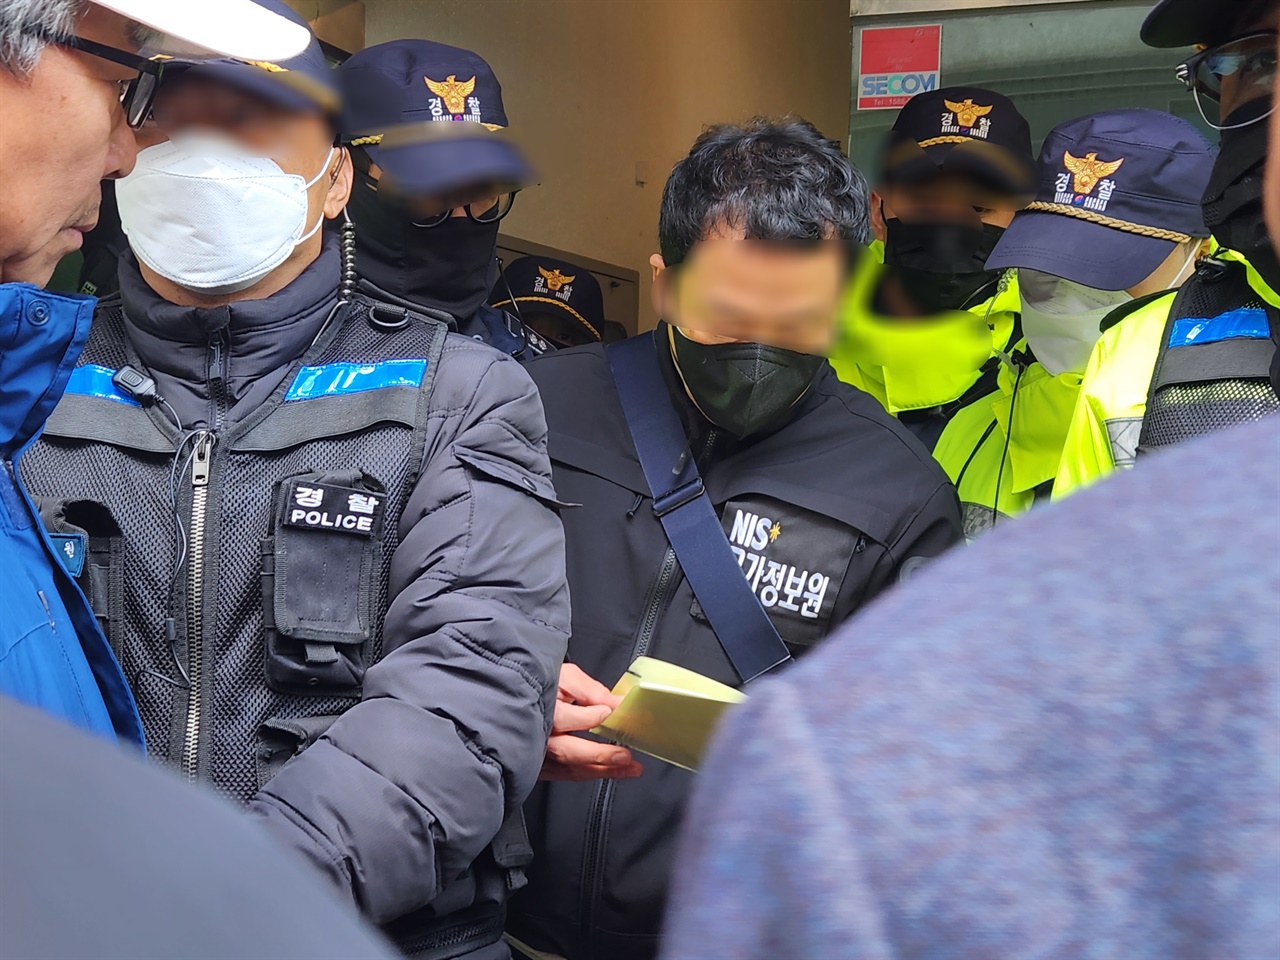 국정원이 지난 11월 7일 충남 농민회 사무실과 활동가들을 전격 압수수색했다. 